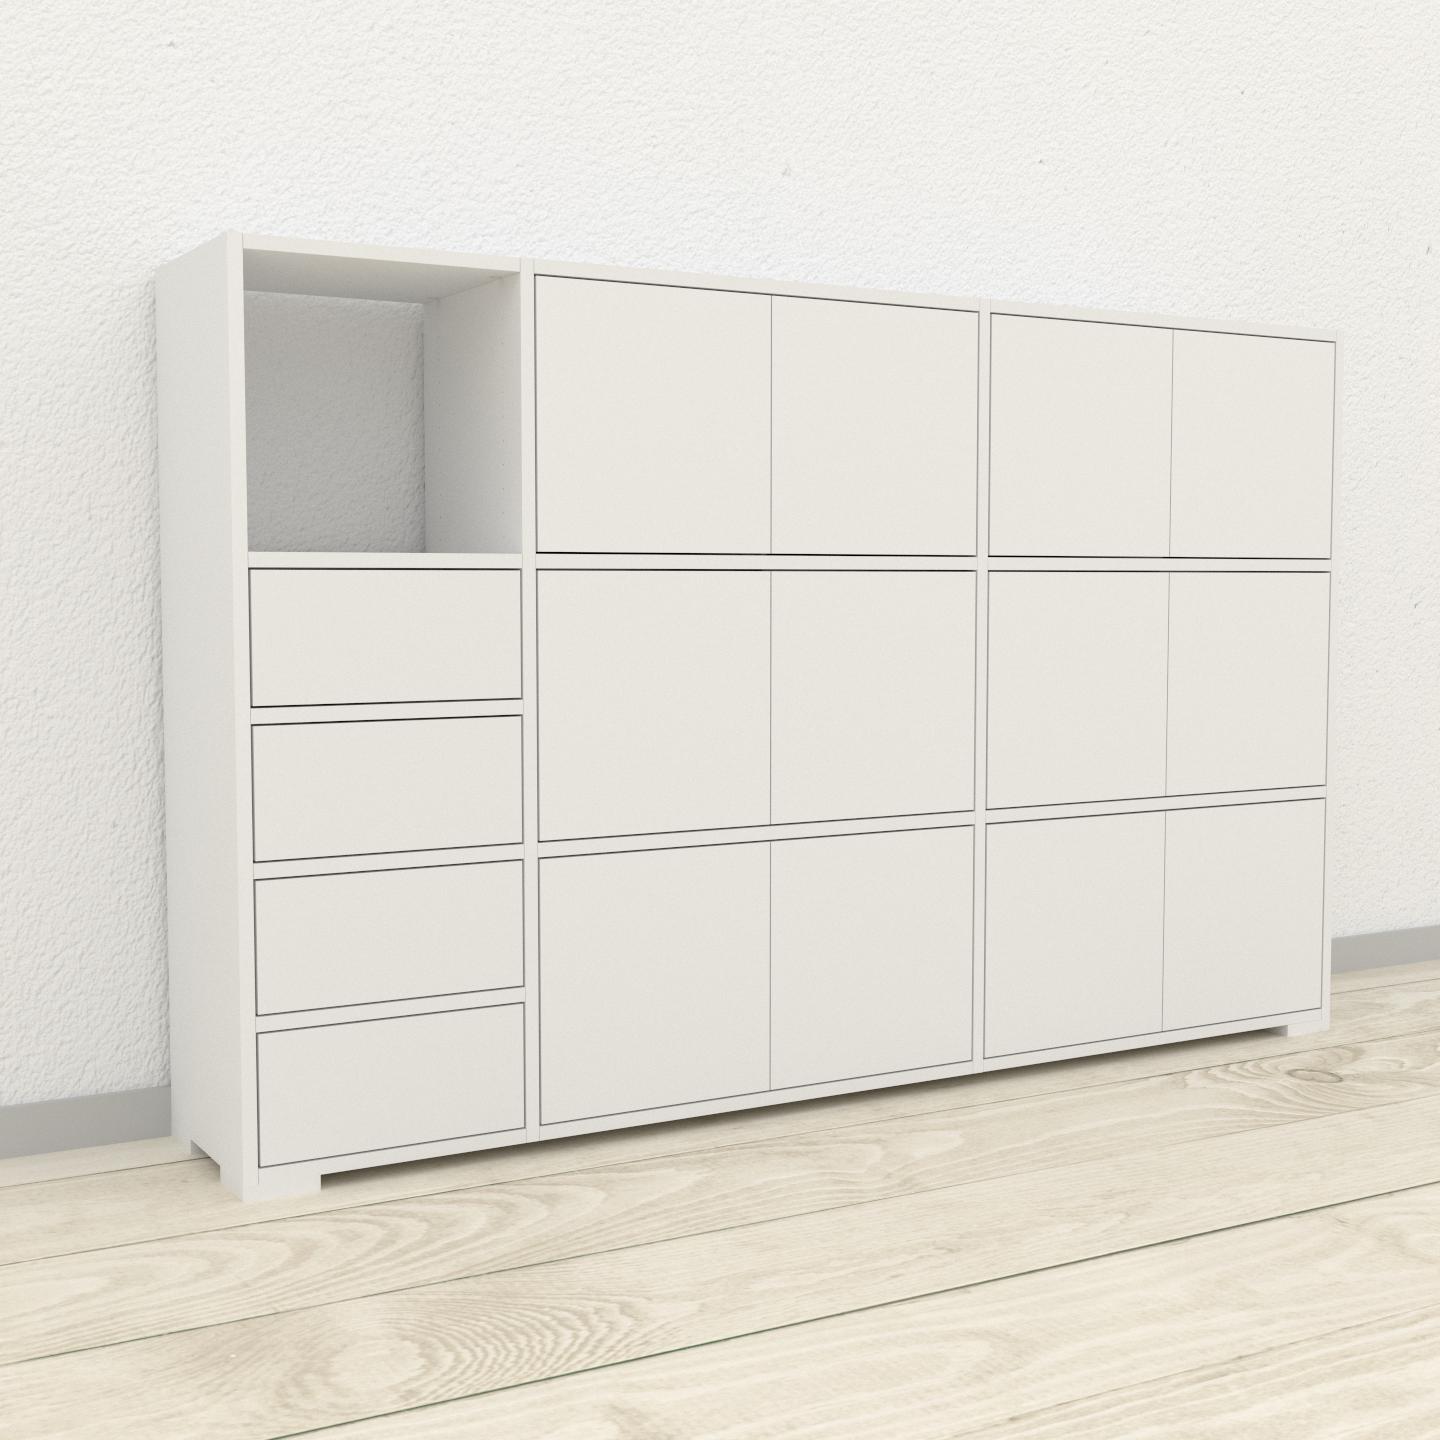 Aktenschrank Weiß - Büroschrank: Schubladen in Weiß & Türen in Weiß